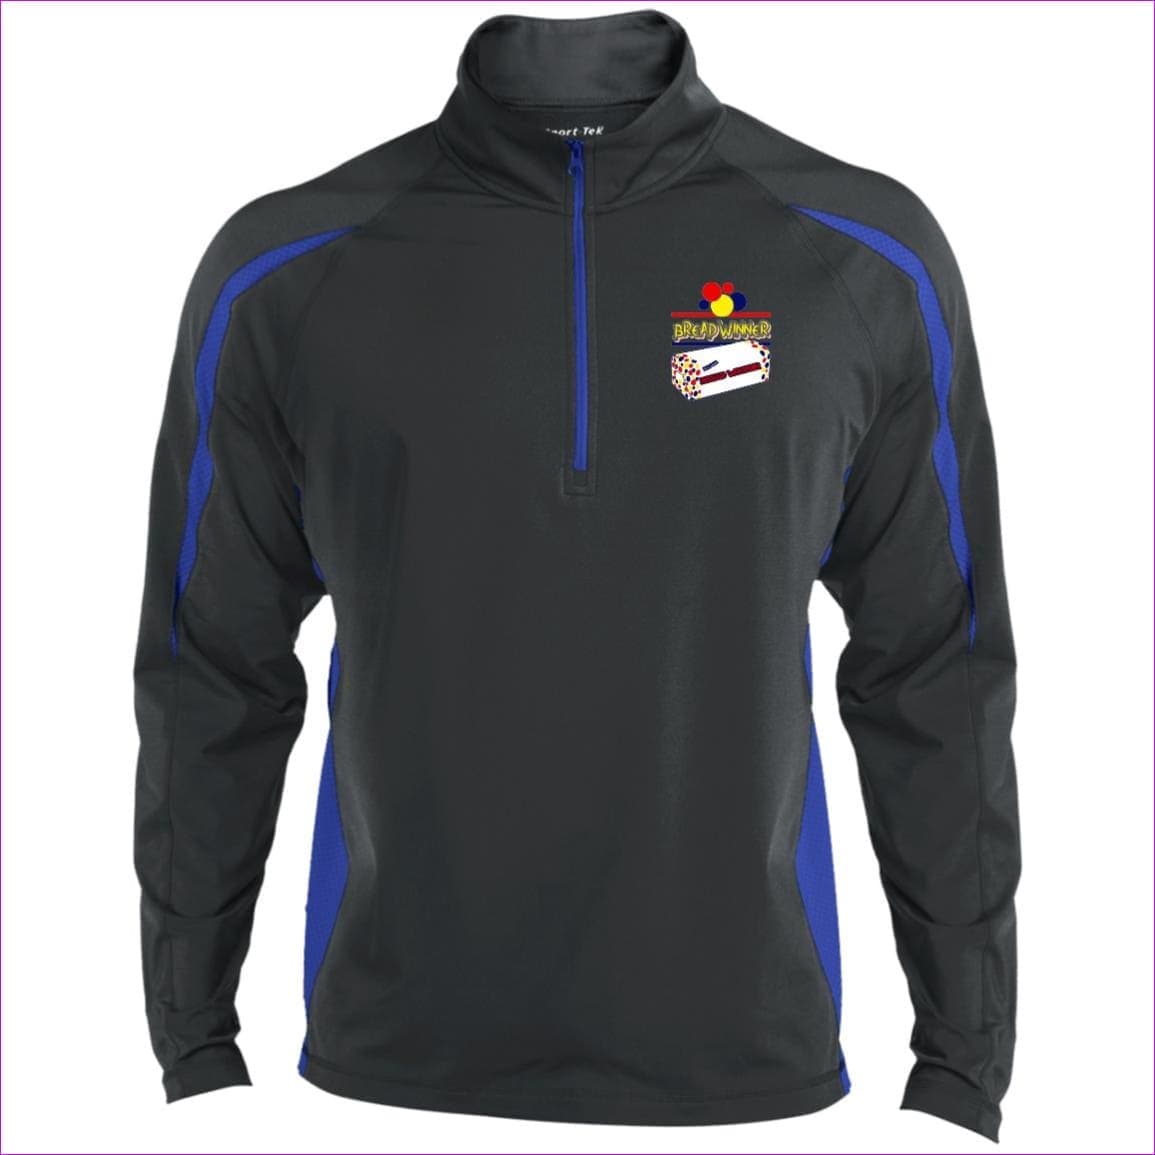 Charcoal Grey/True Royal Bread Winner Men's Sport Wicking Colorblock 1/2 Zip Sweatshirt - men's sweatshirt at TFC&H Co.